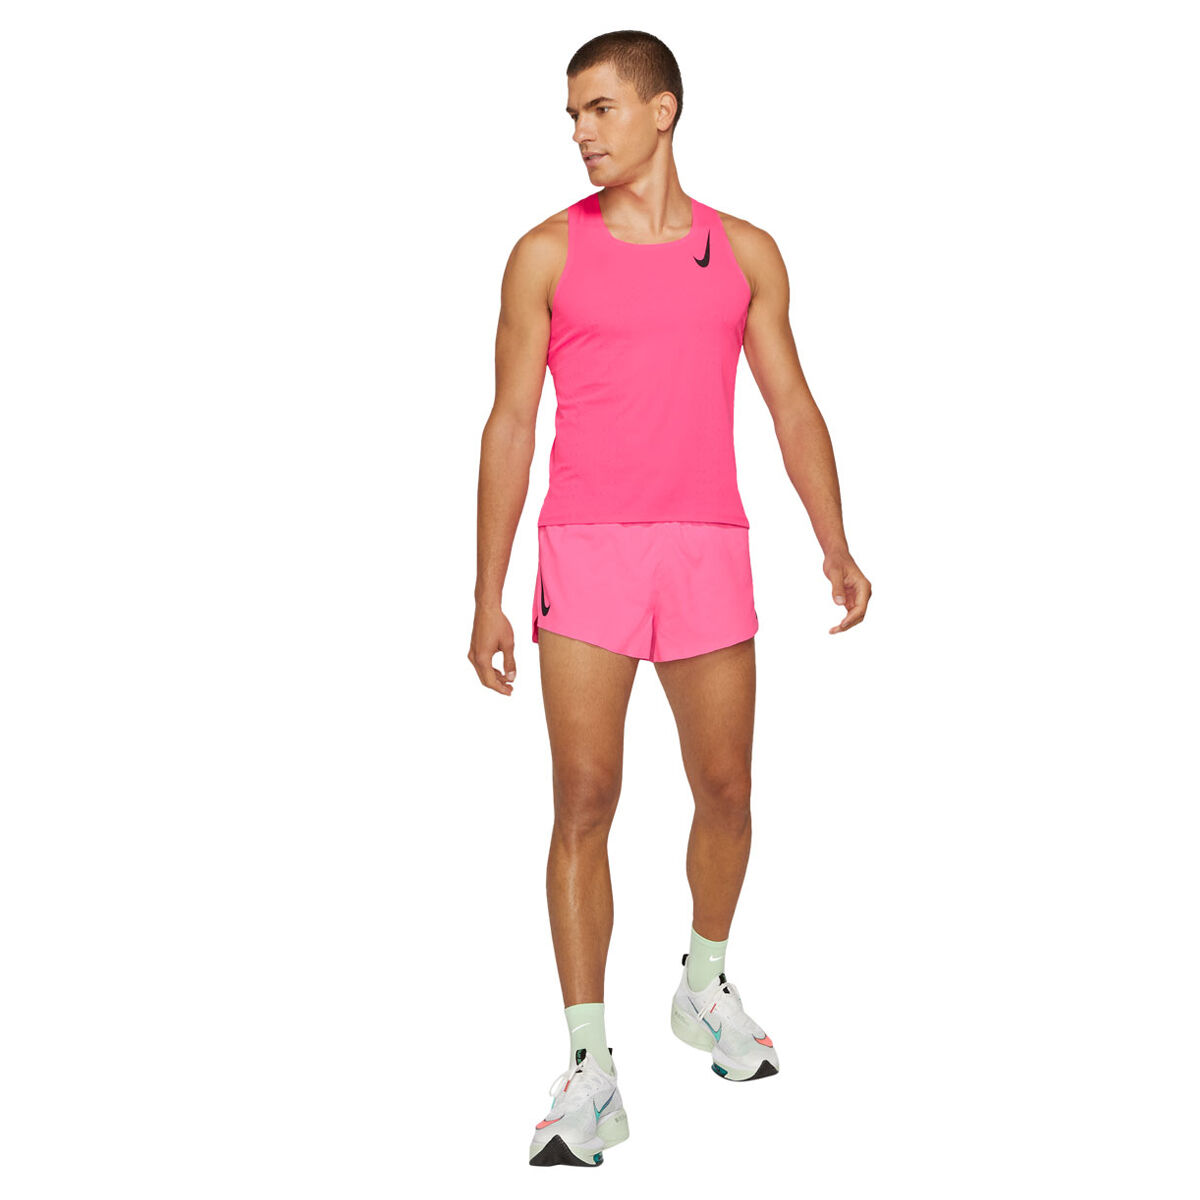 Nike Mens AeroSwift Running Singlet Pink M, Pink, rebel_hi-res